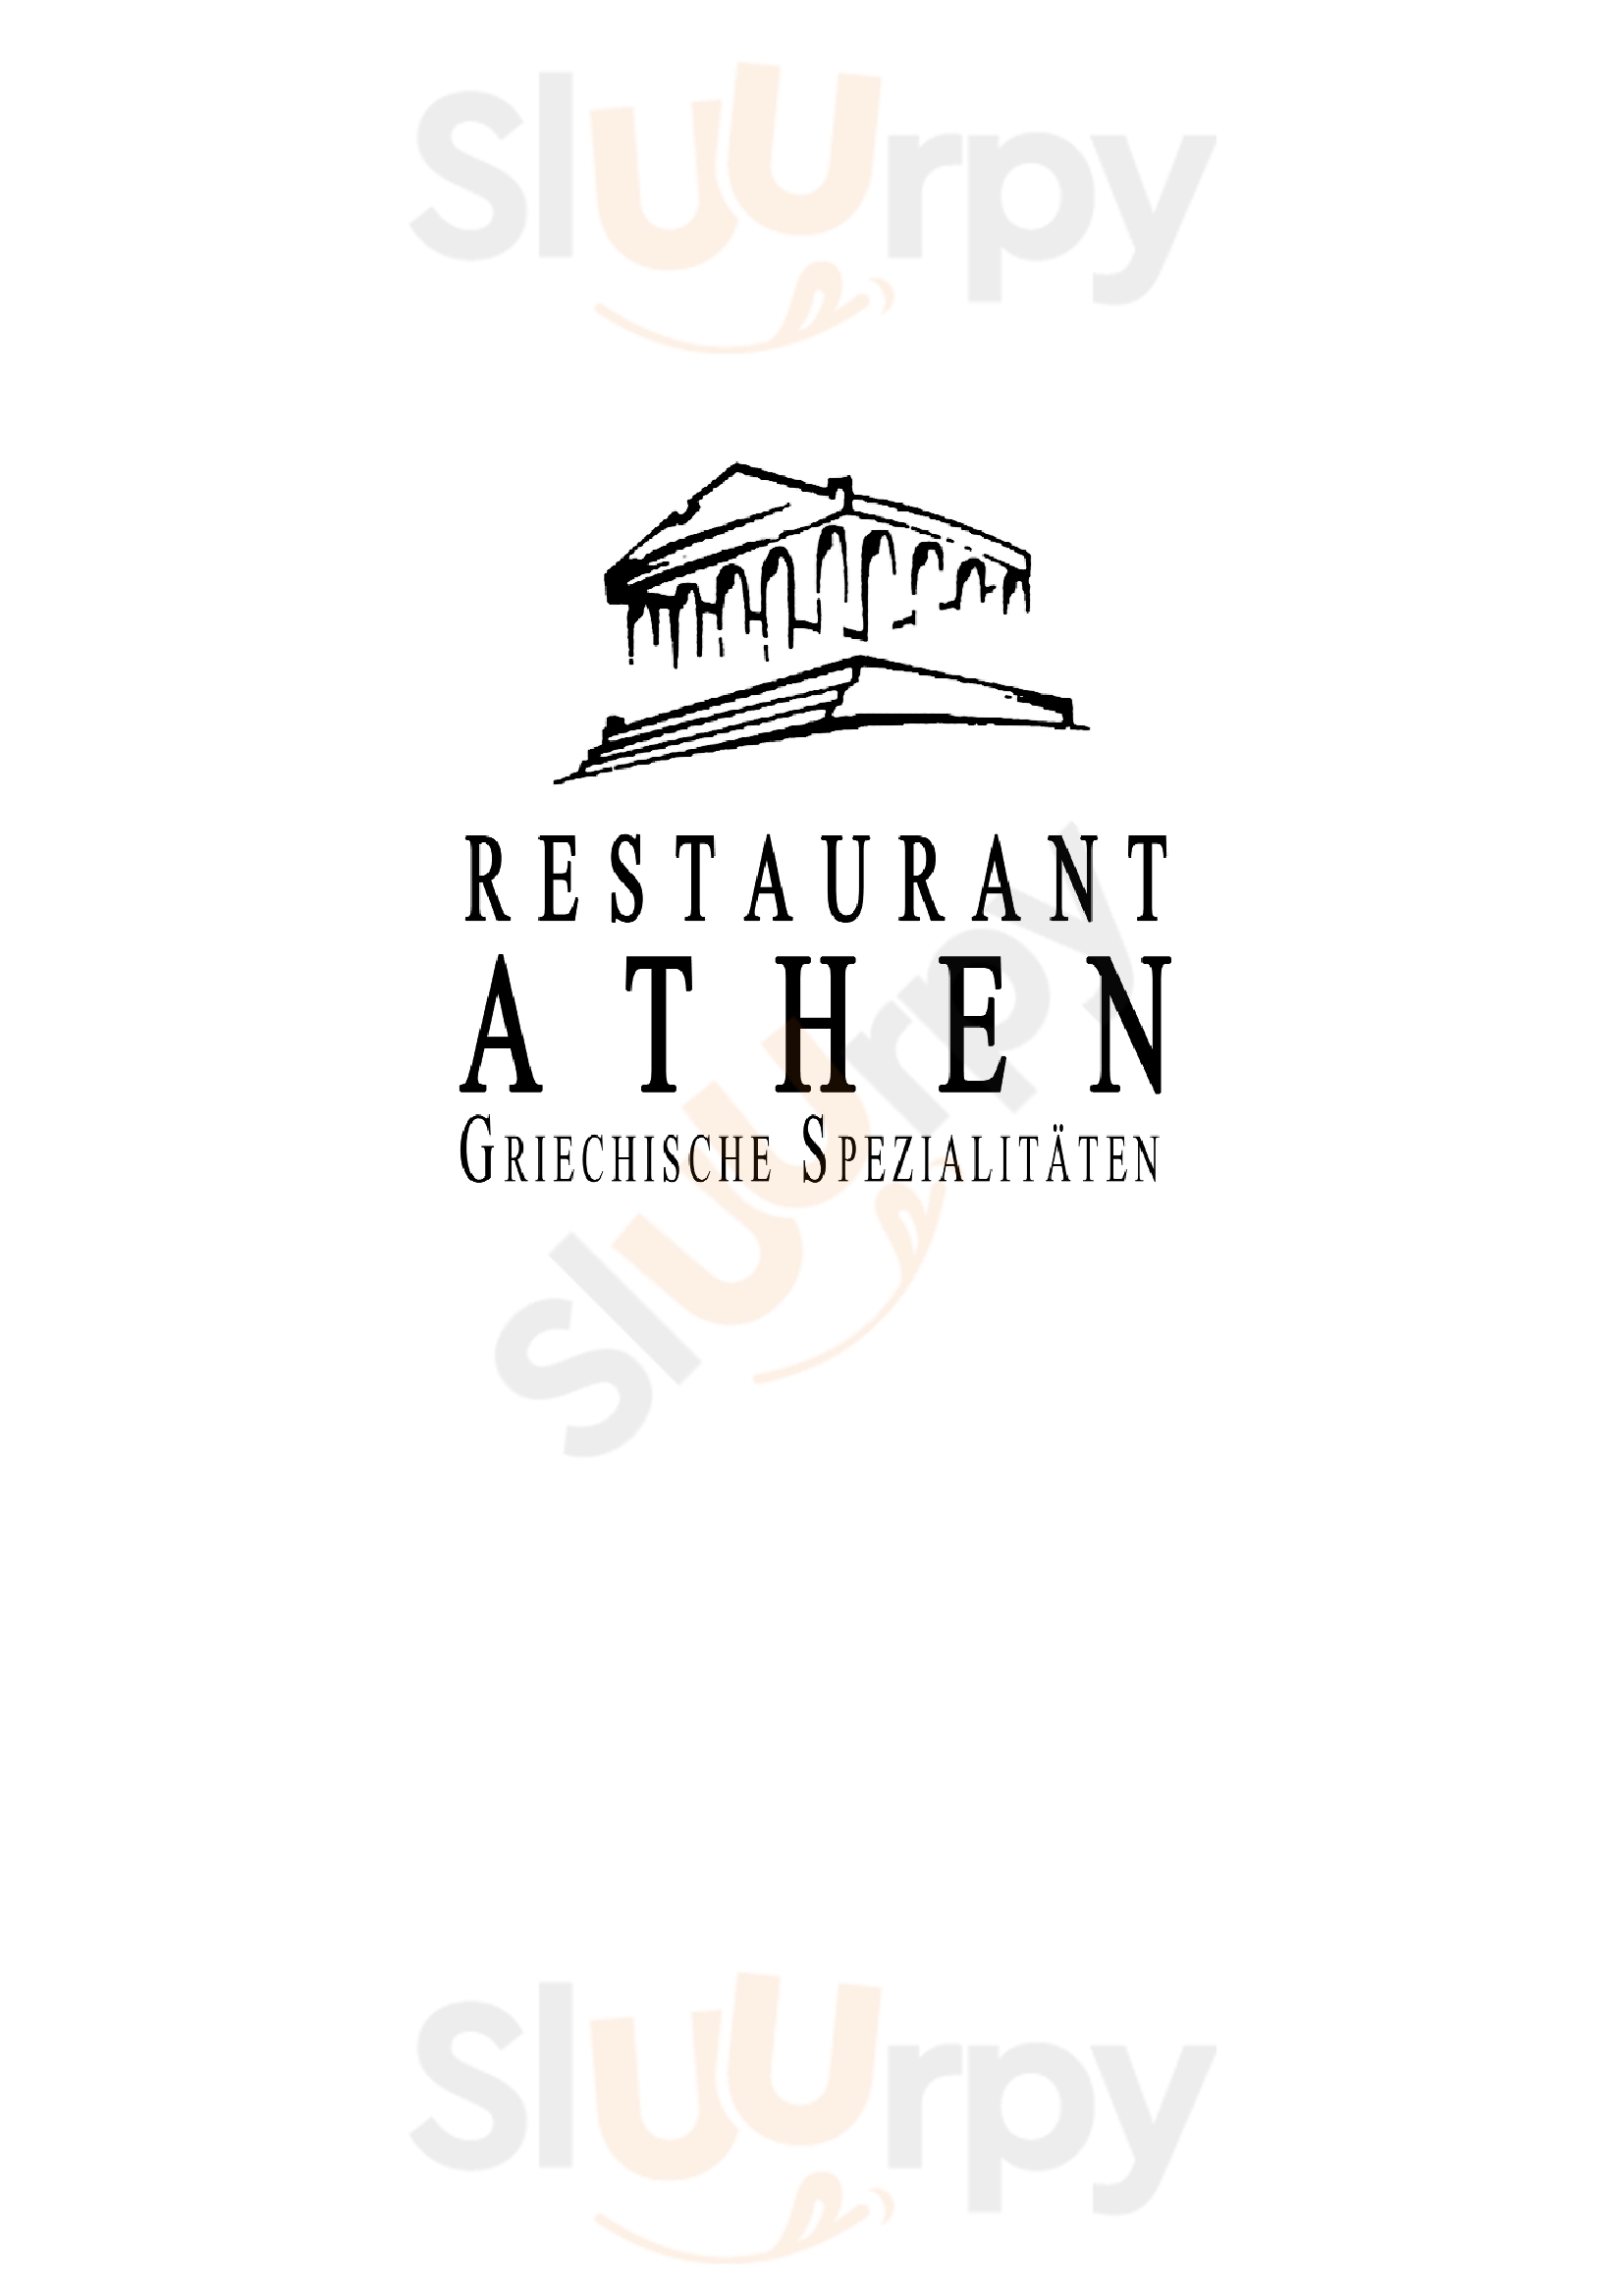 Griechisches Restaurant Athen Zwiesel Menu - 1